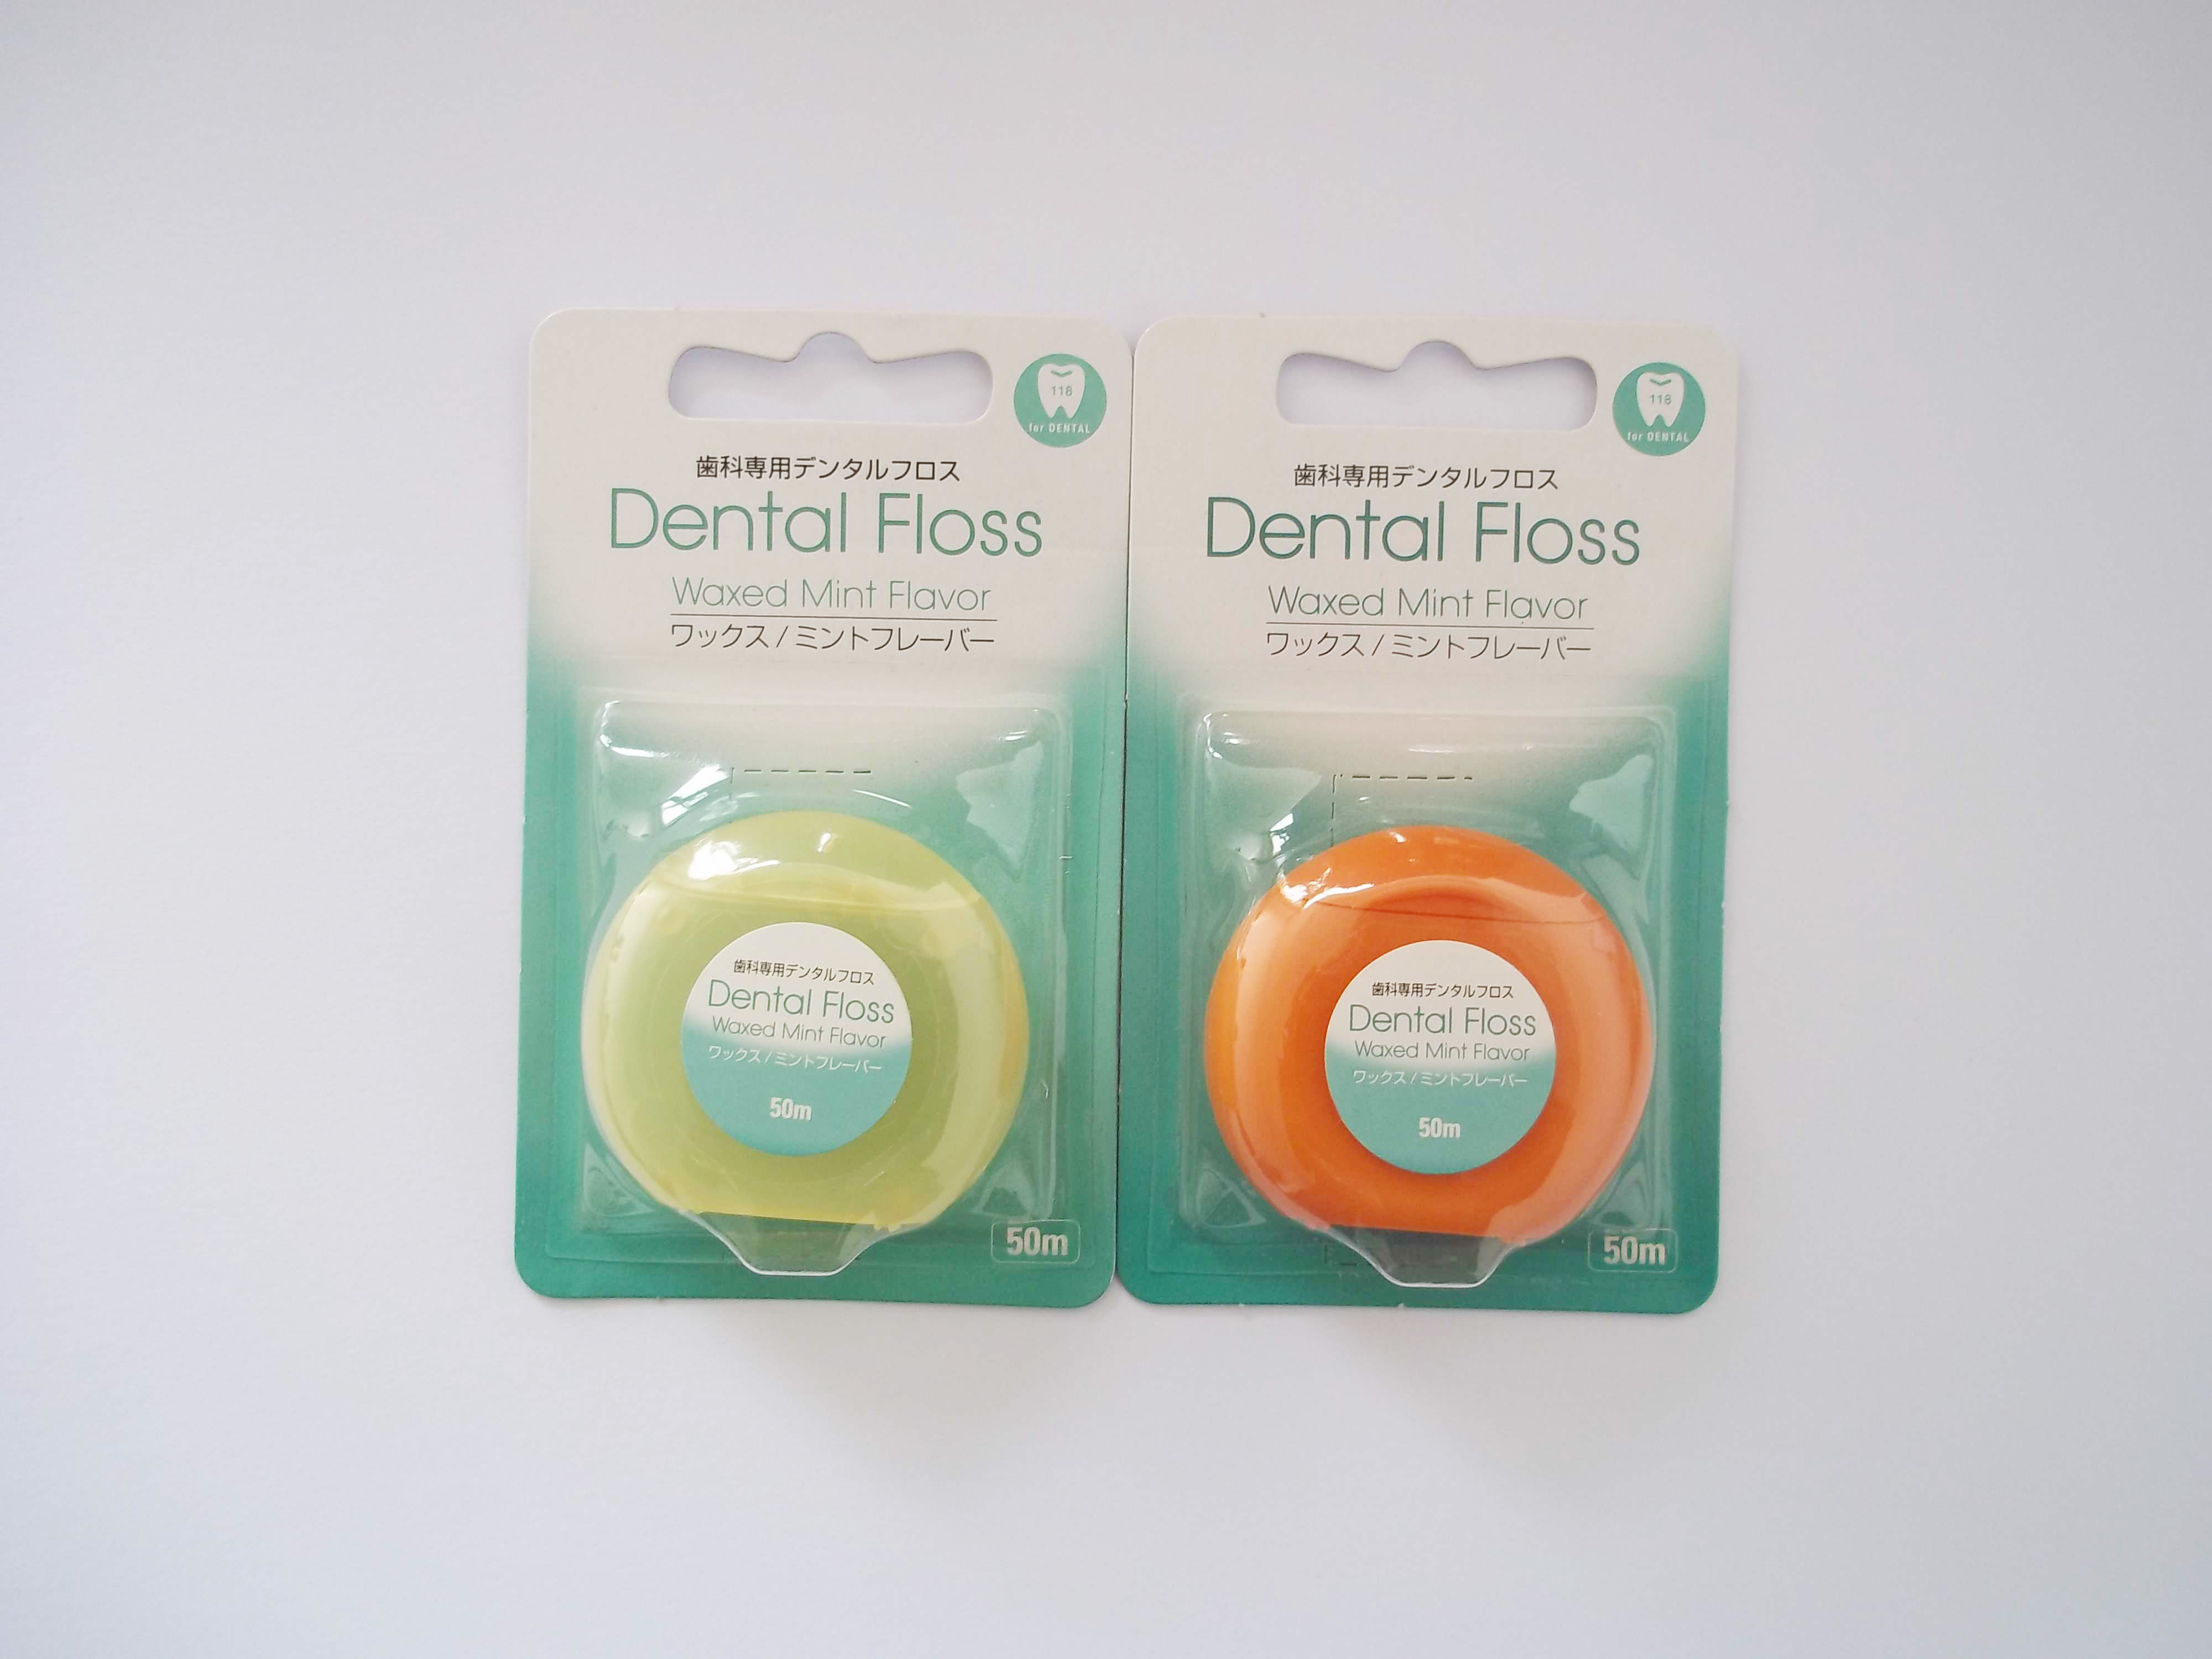 50M circle shape dental floss